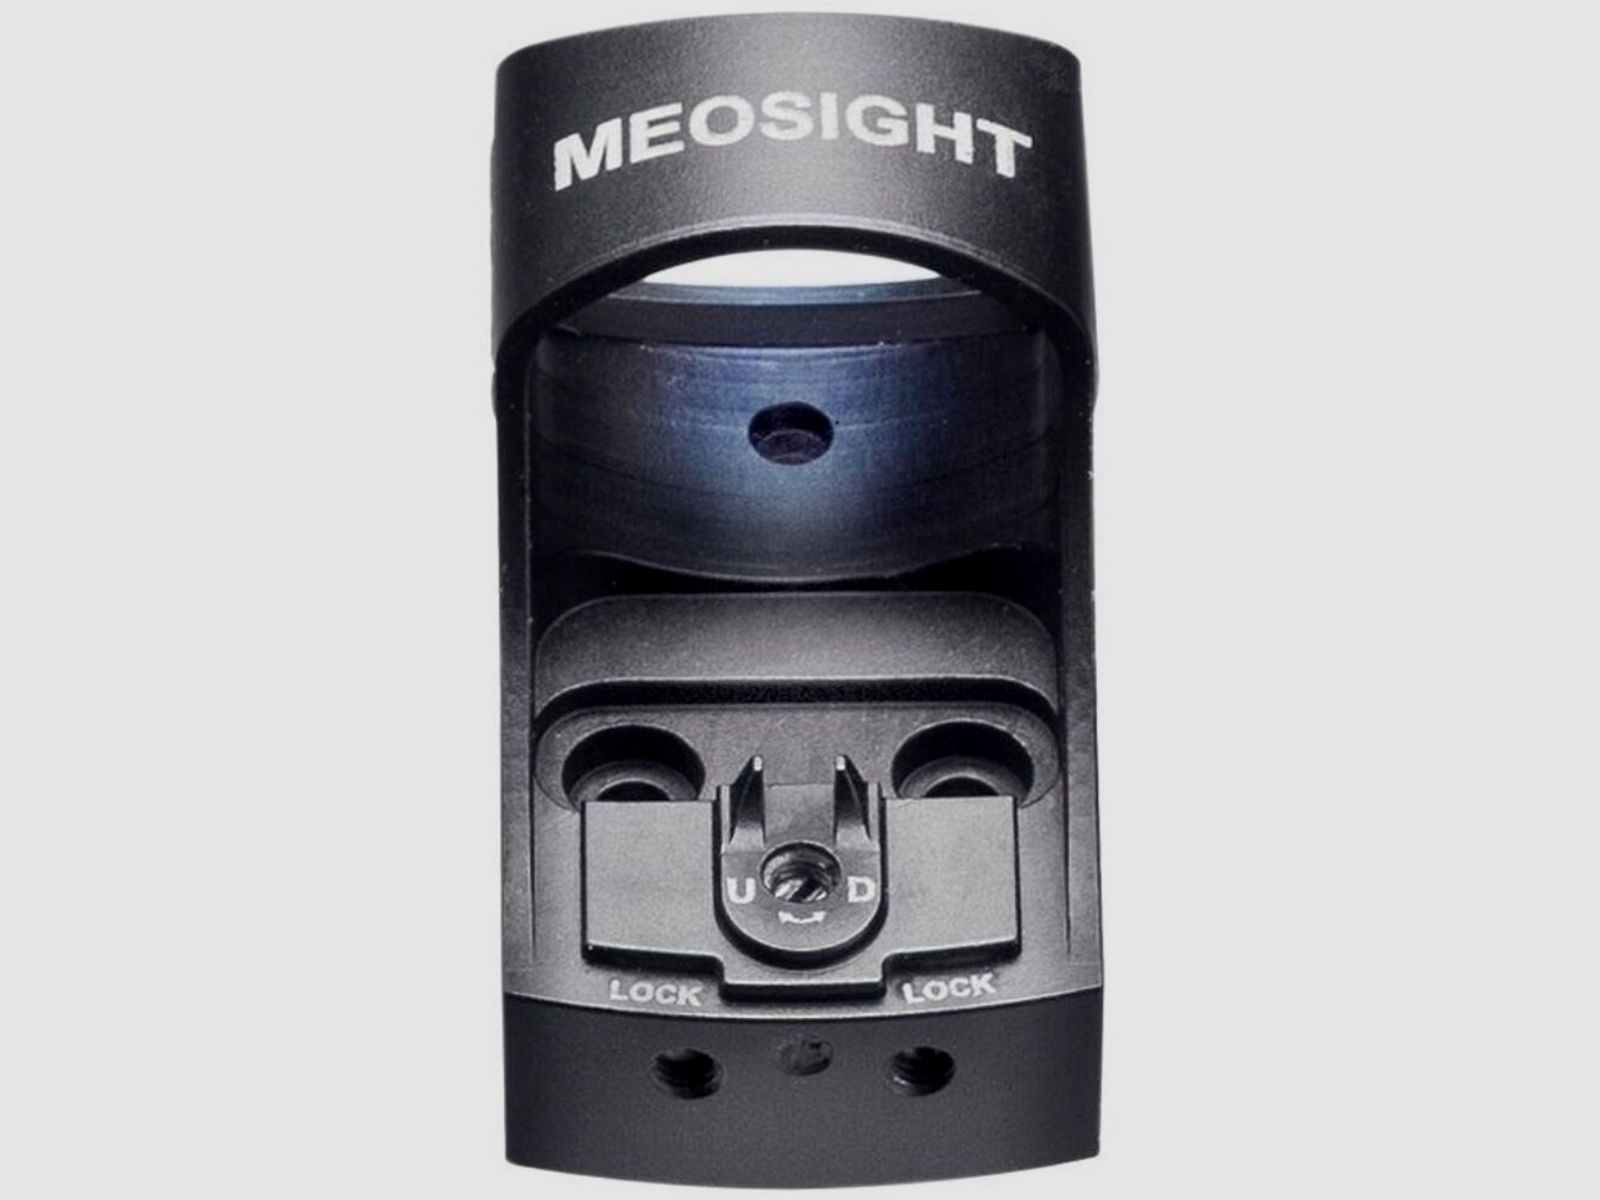 Meopta	 Meosight III